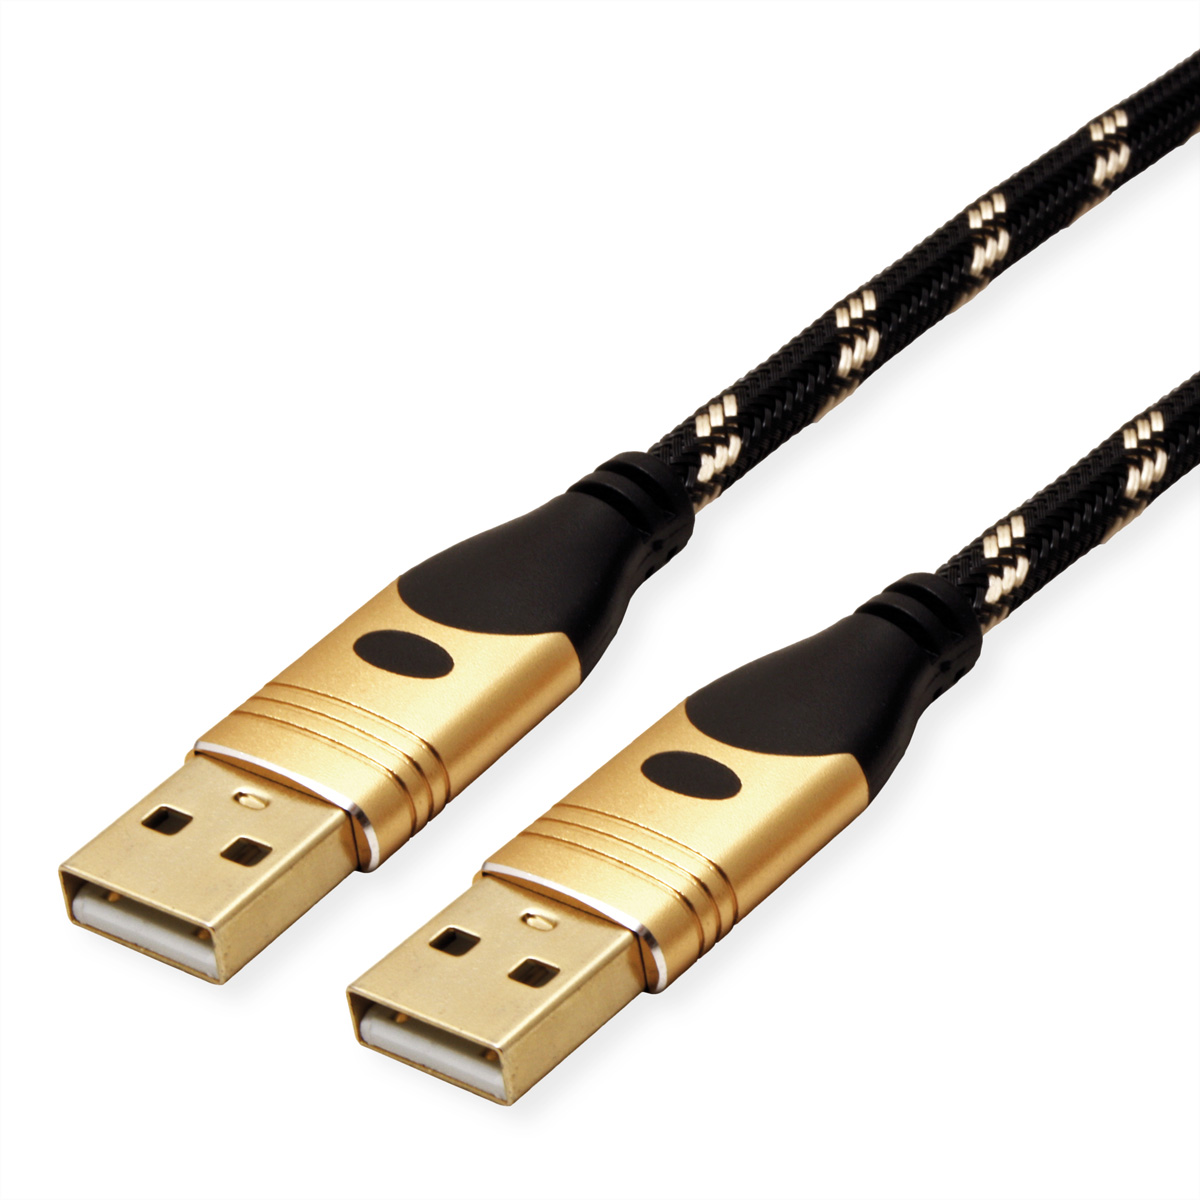 2.0 USB 2.0 Kabel ROLINE Kabel USB GOLD